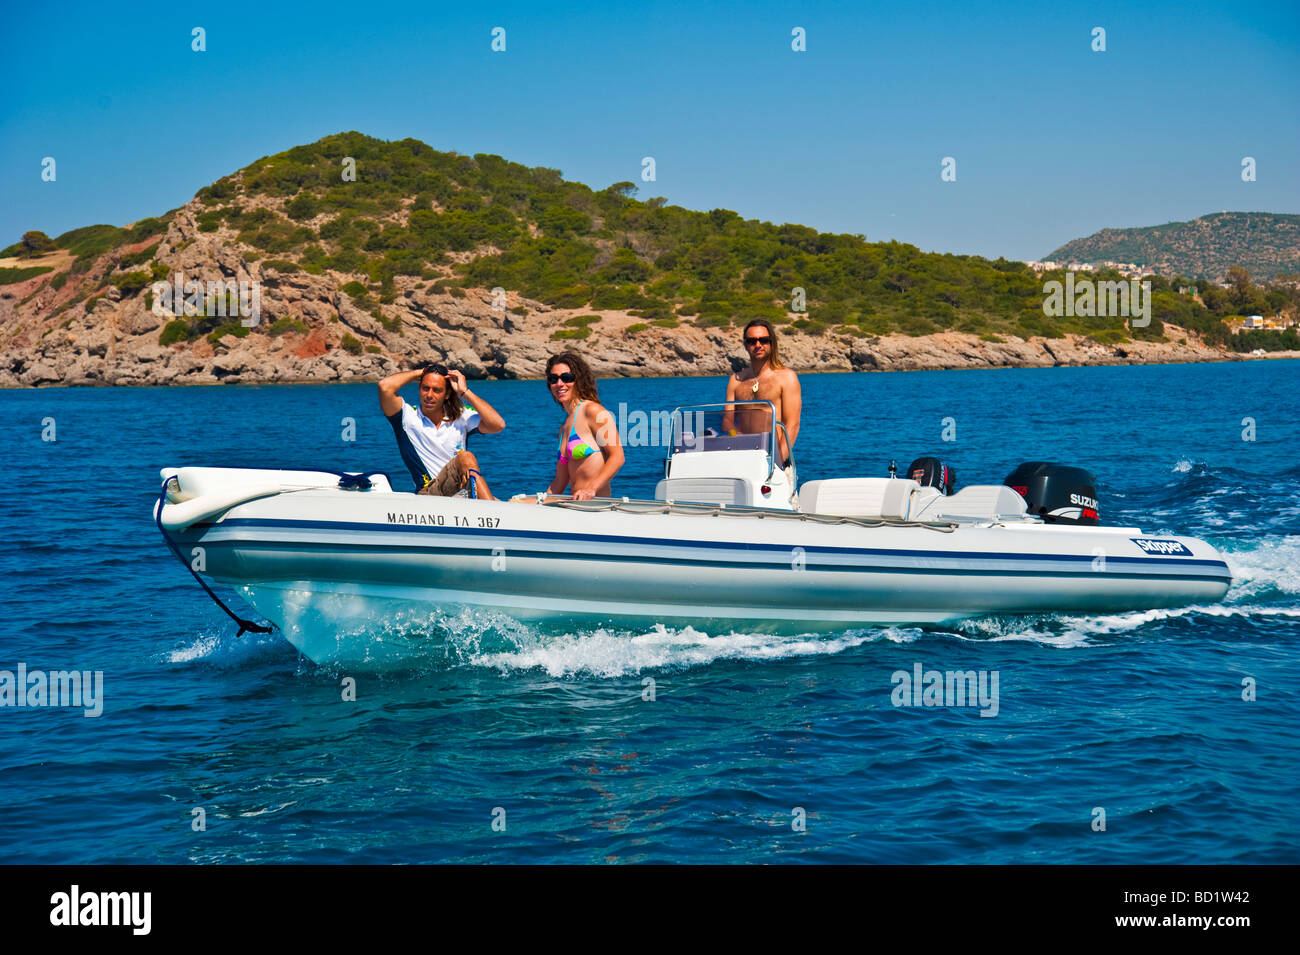 Fille avec deux hommes dans un bateau gonflable Banque D'Images